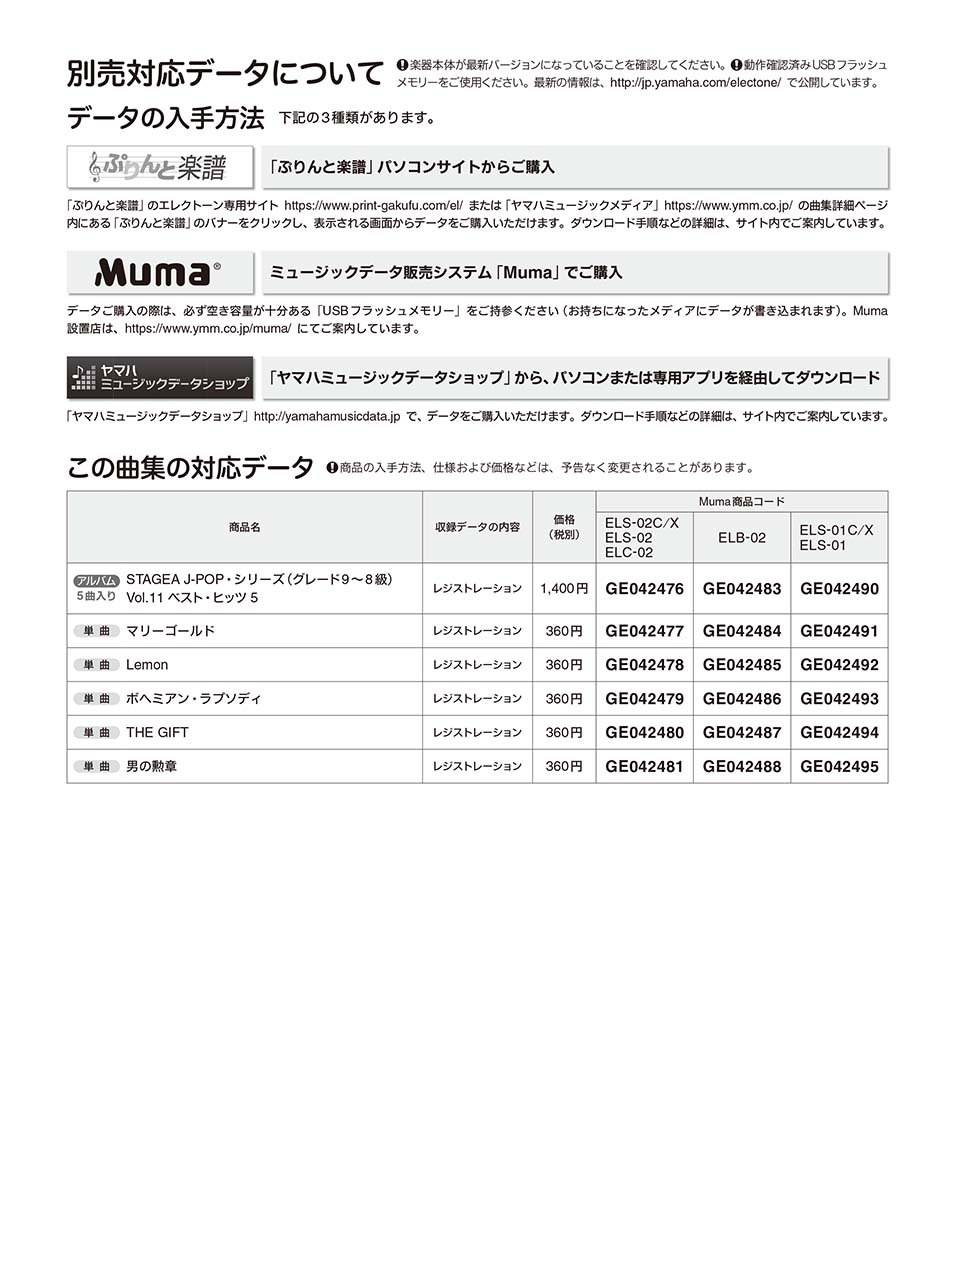 ヤマハ】STAGEA J-POP 9～8級 Vol.11 ベスト・ヒッツ5 楽譜 エレクトーン ヤマハの楽譜出版